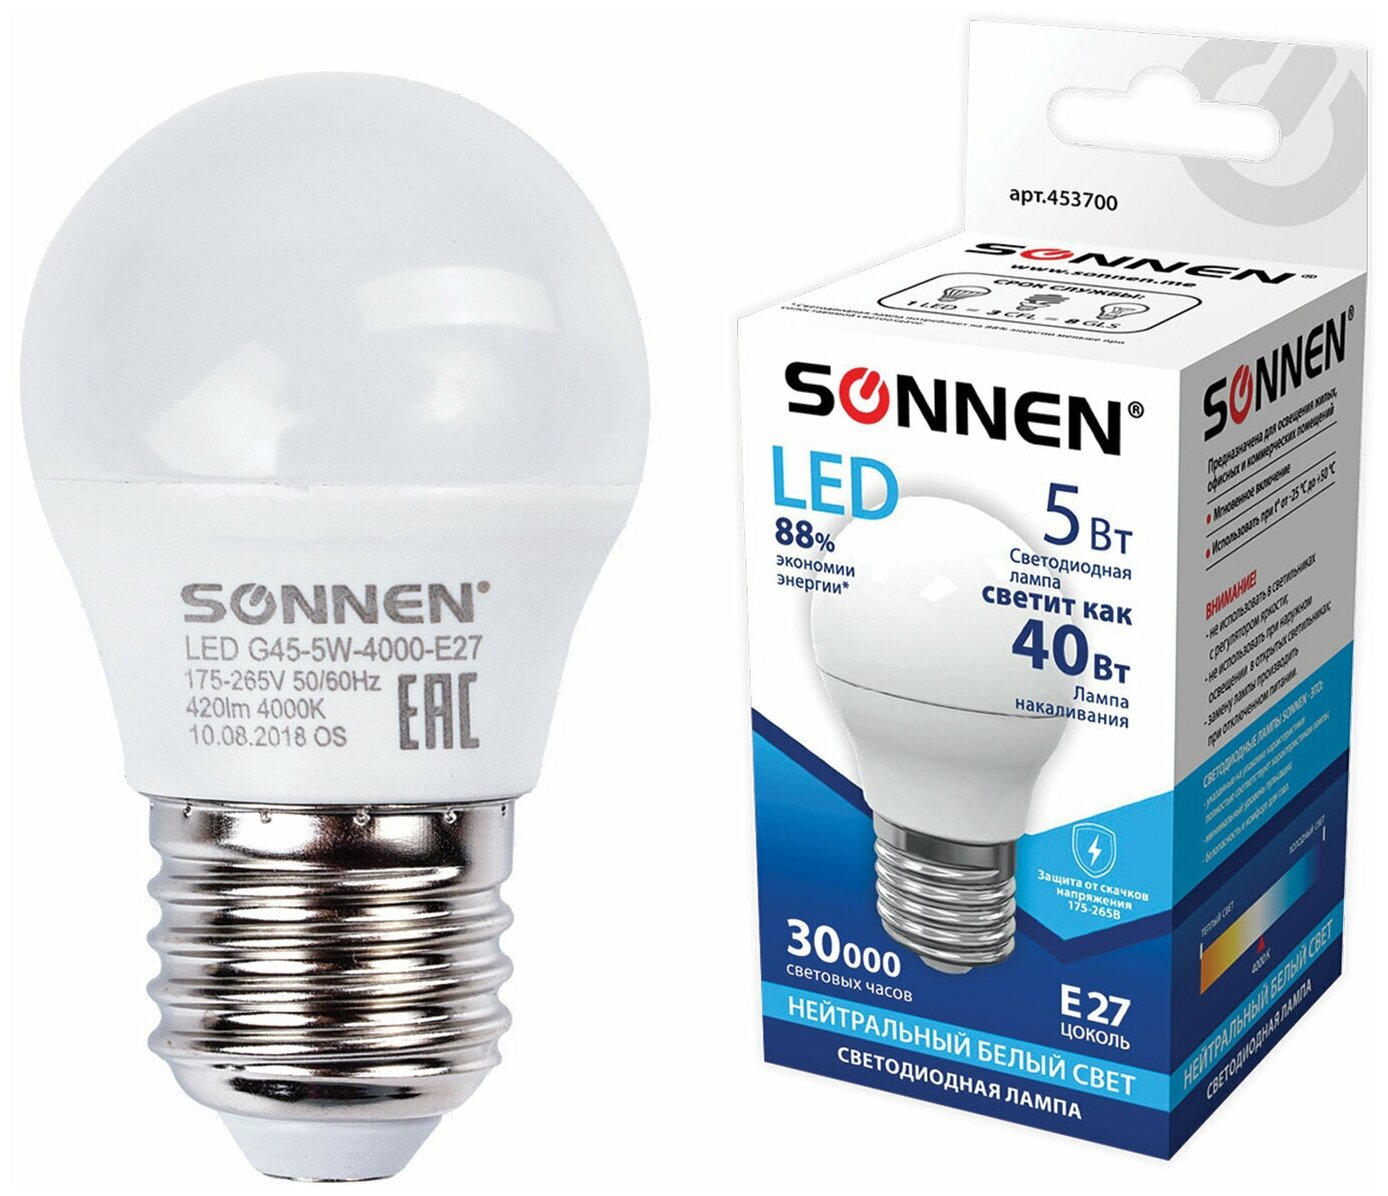 Лампа светодиодная SONNEN 5 (40) Вт цоколь E27 шар холодный белый свет LED G45-5W-4000-E27 453700